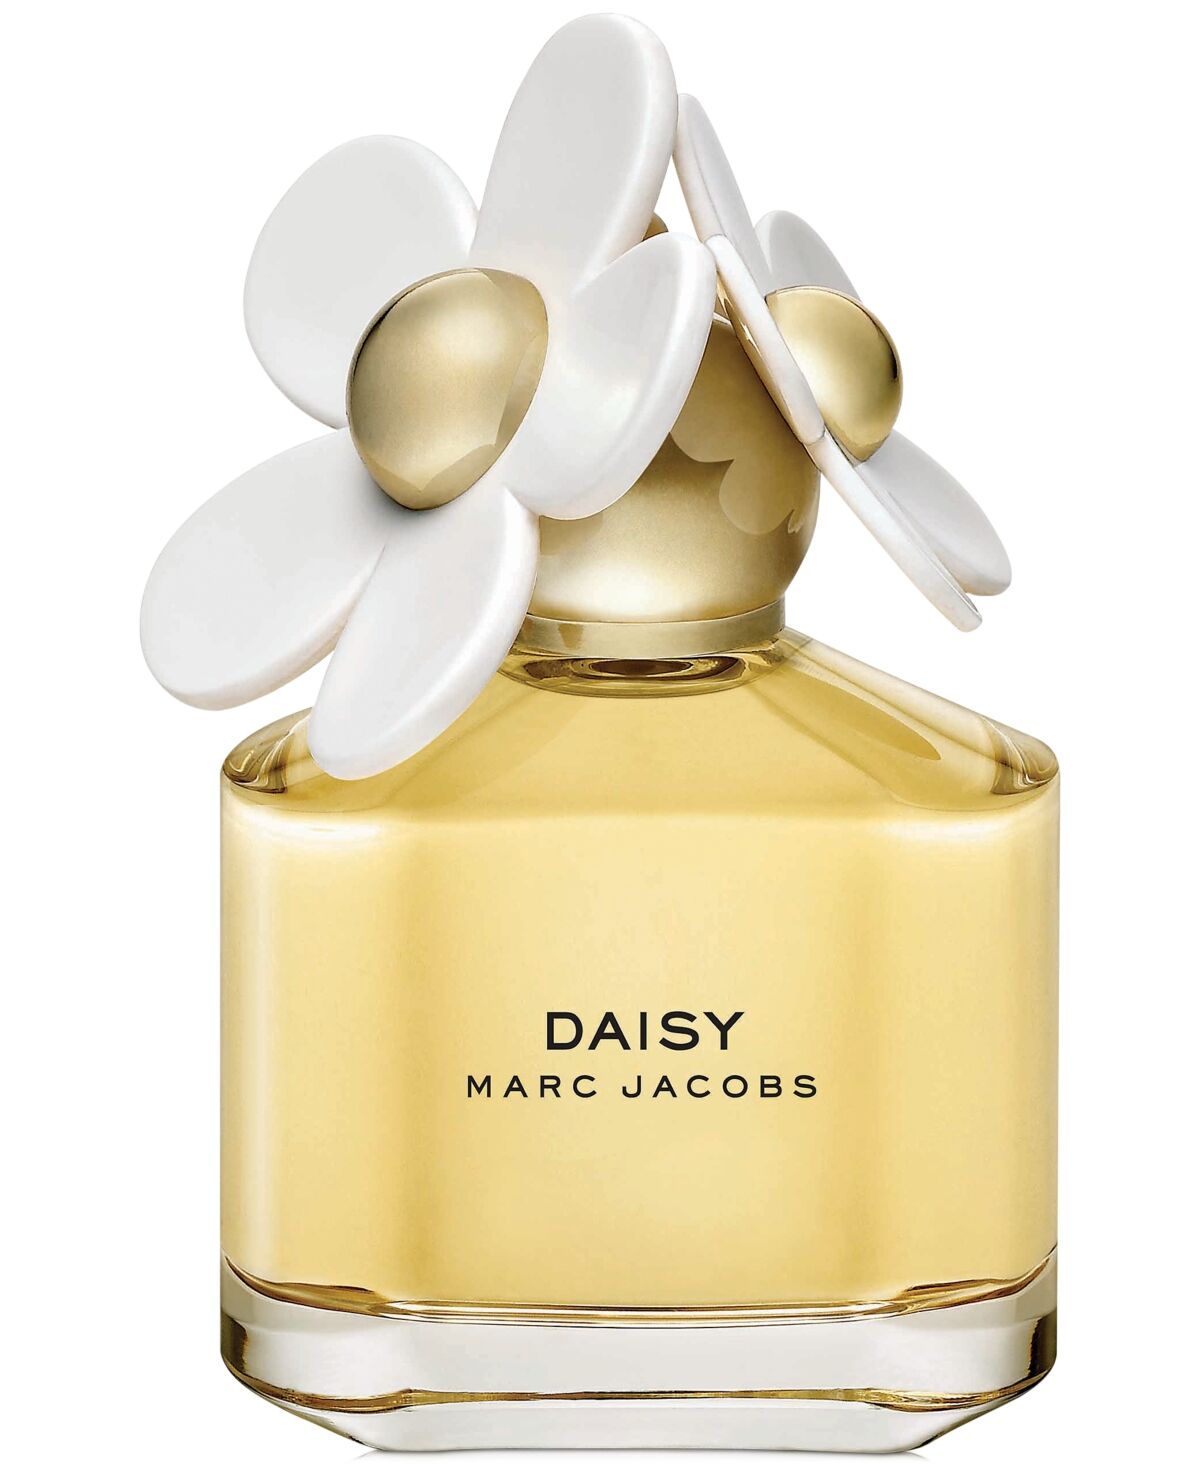 Marc Jacobs Daisy Eau de Toilette Spray, 6.7-oz.